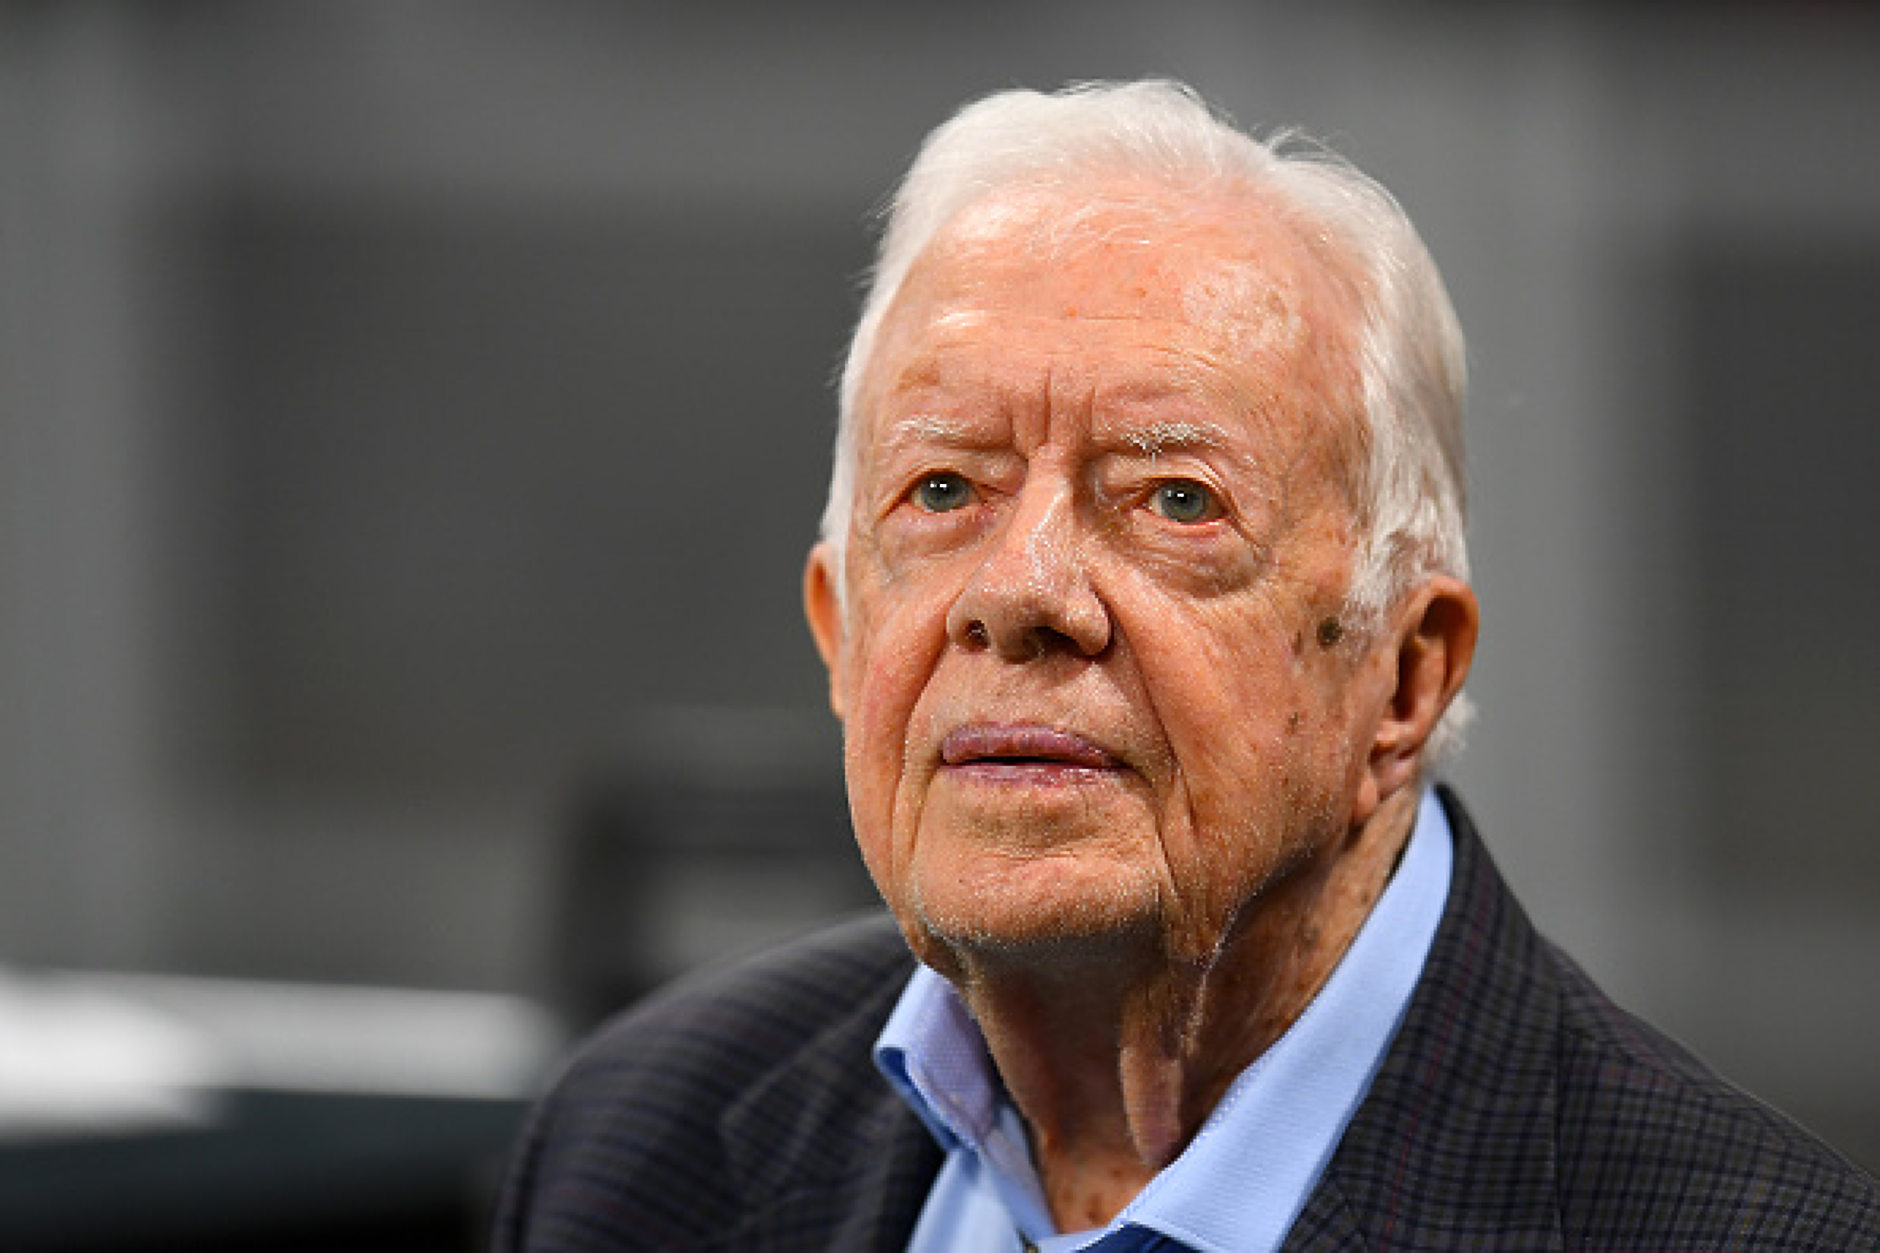 Здравето на бившия президент Джими Картър се влоши, близките му са край него